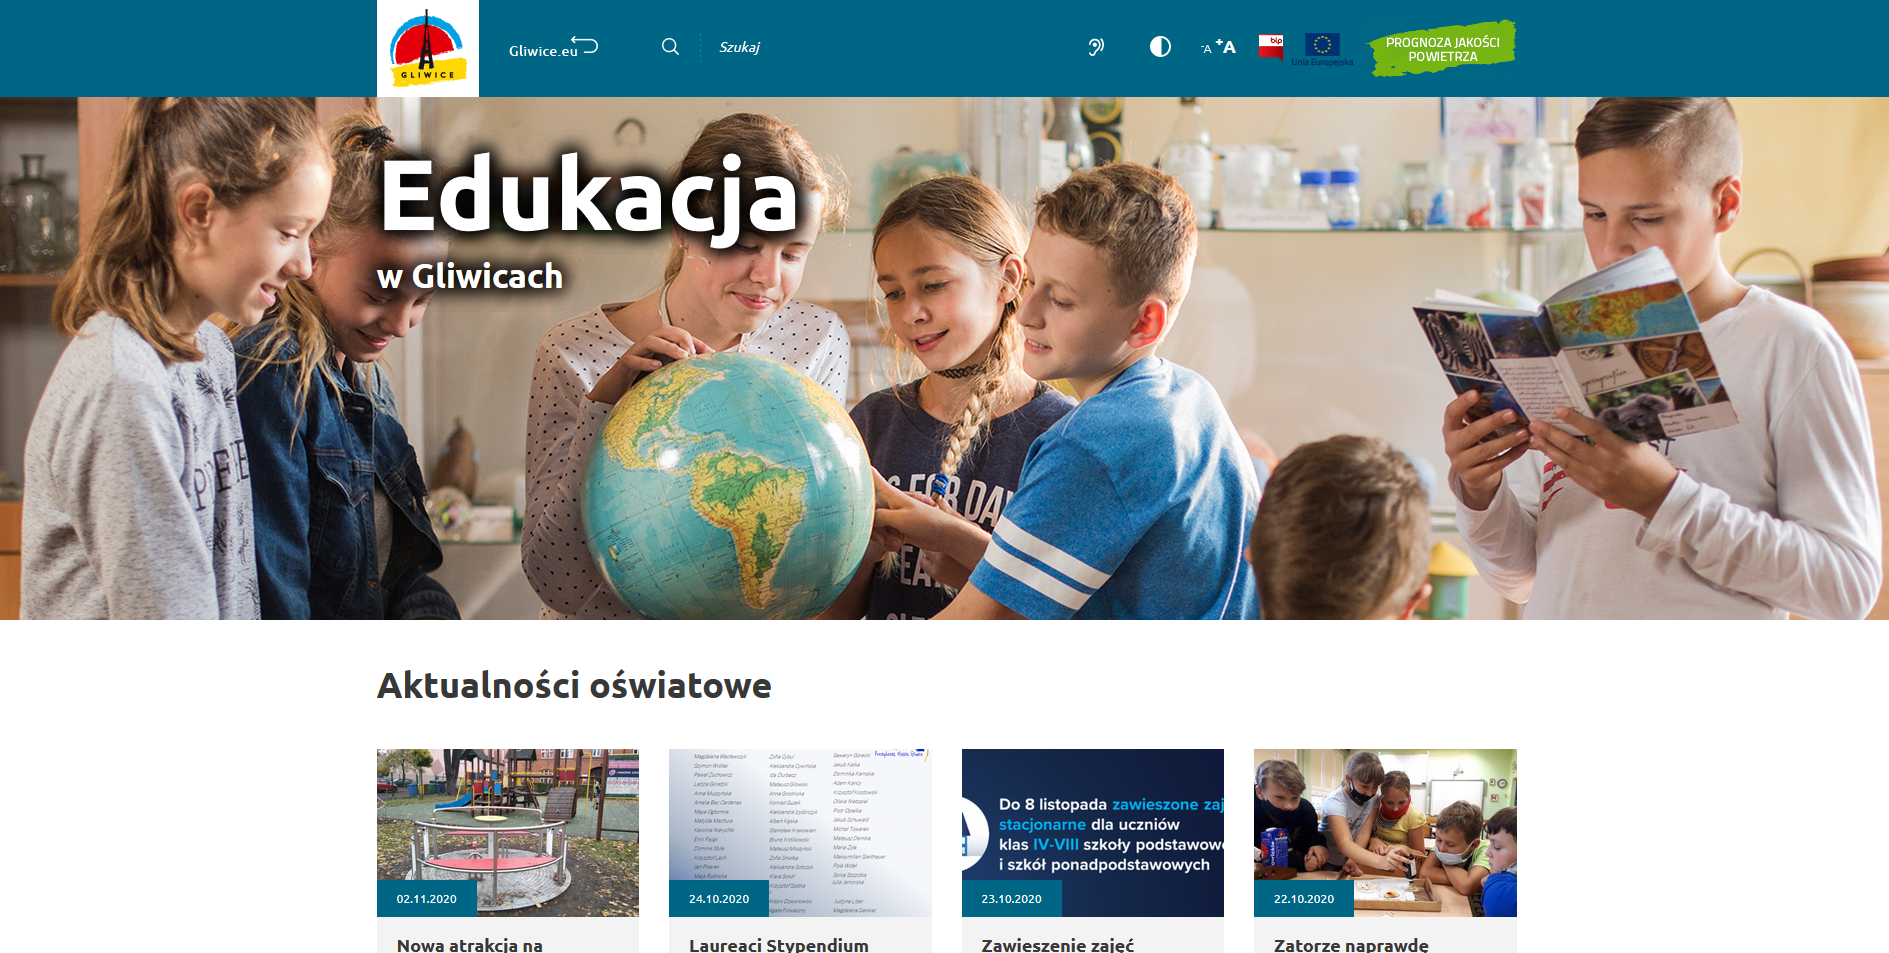 Edukacja w Gliwicach – wszystko jest w sieci